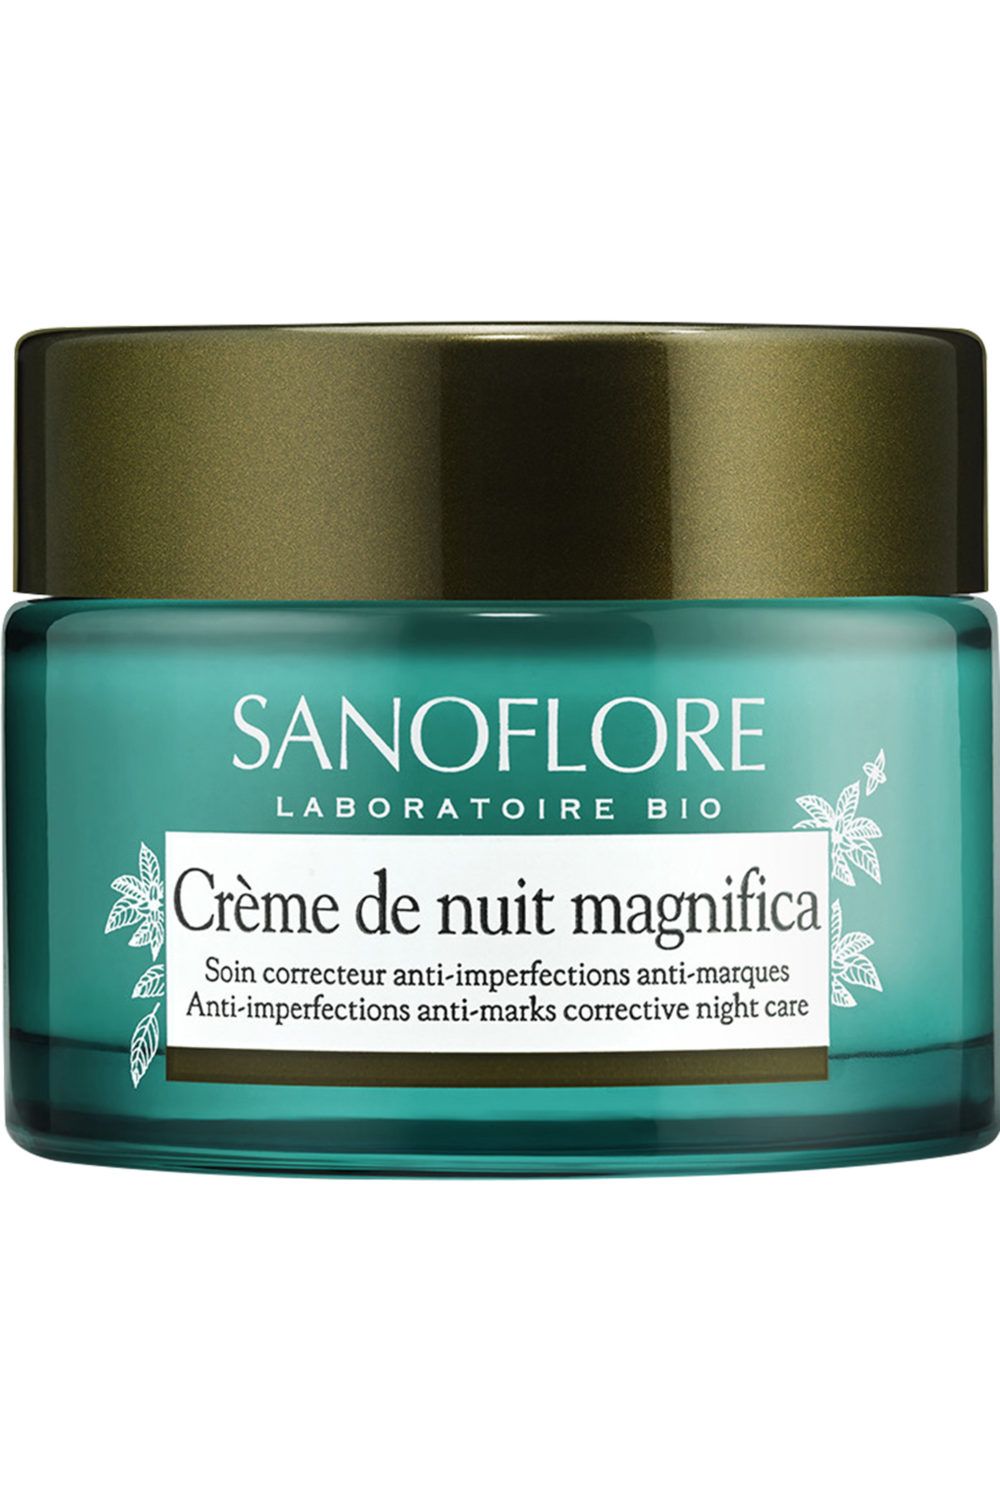 Sanoflore - Crème de Nuit Magnifica